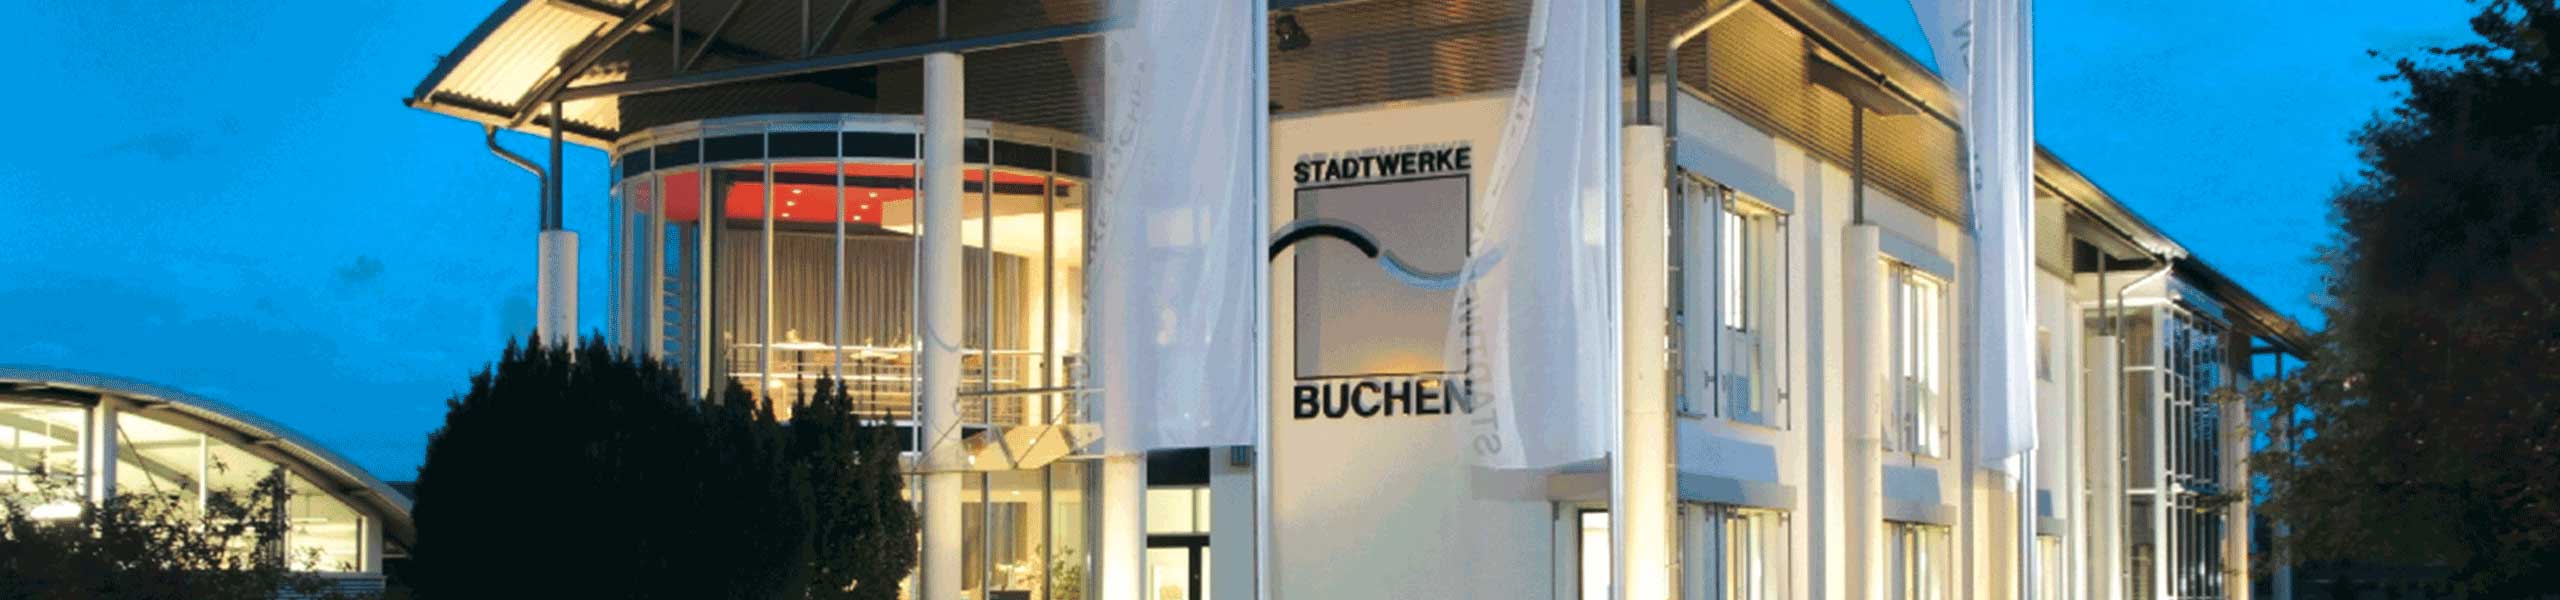 Stadtwerke Buchen GmbH & Co KG - Ihr Versorger vor Ort - Sperrung der Dürmer Straße in Hainstadt vom Friedhof bis zum letzten Aussiedlerhof